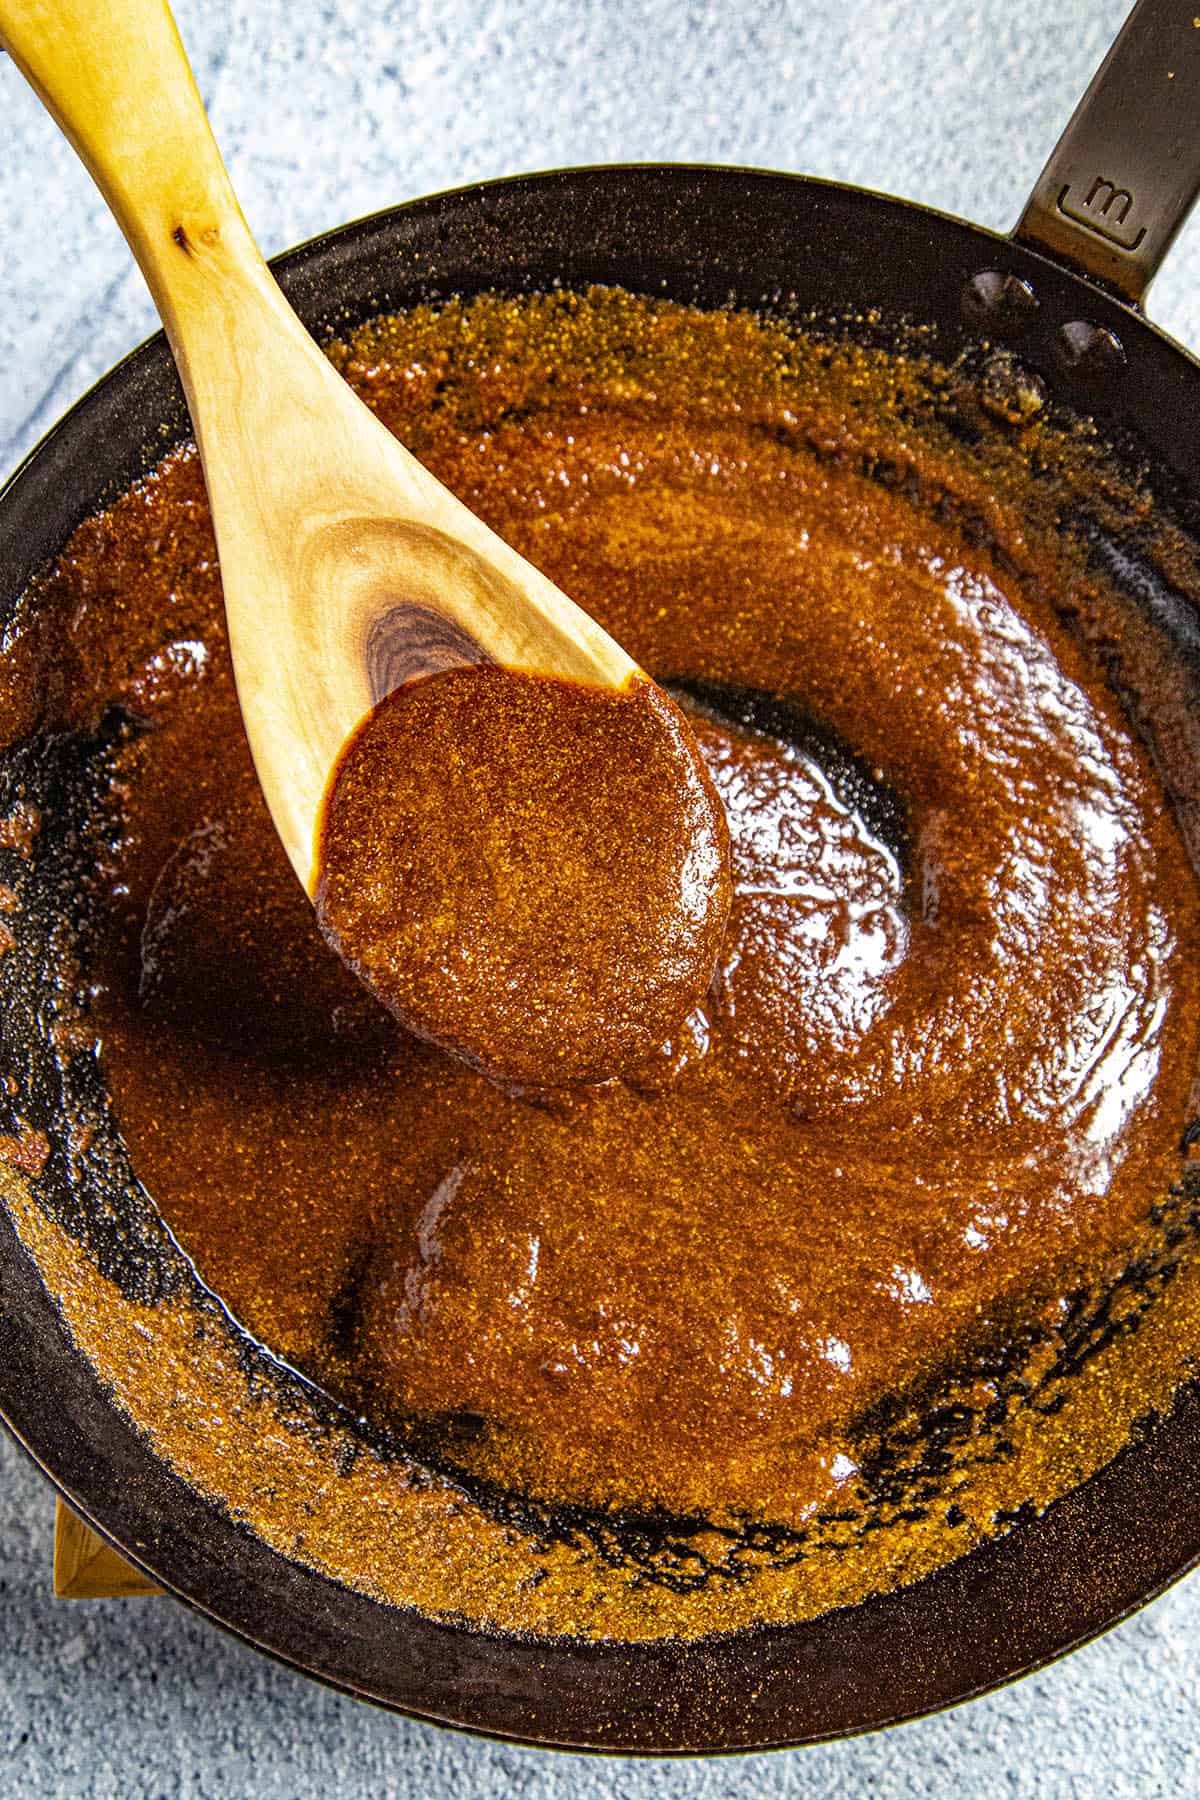 Nashville Hot Sauce swirled in a pan